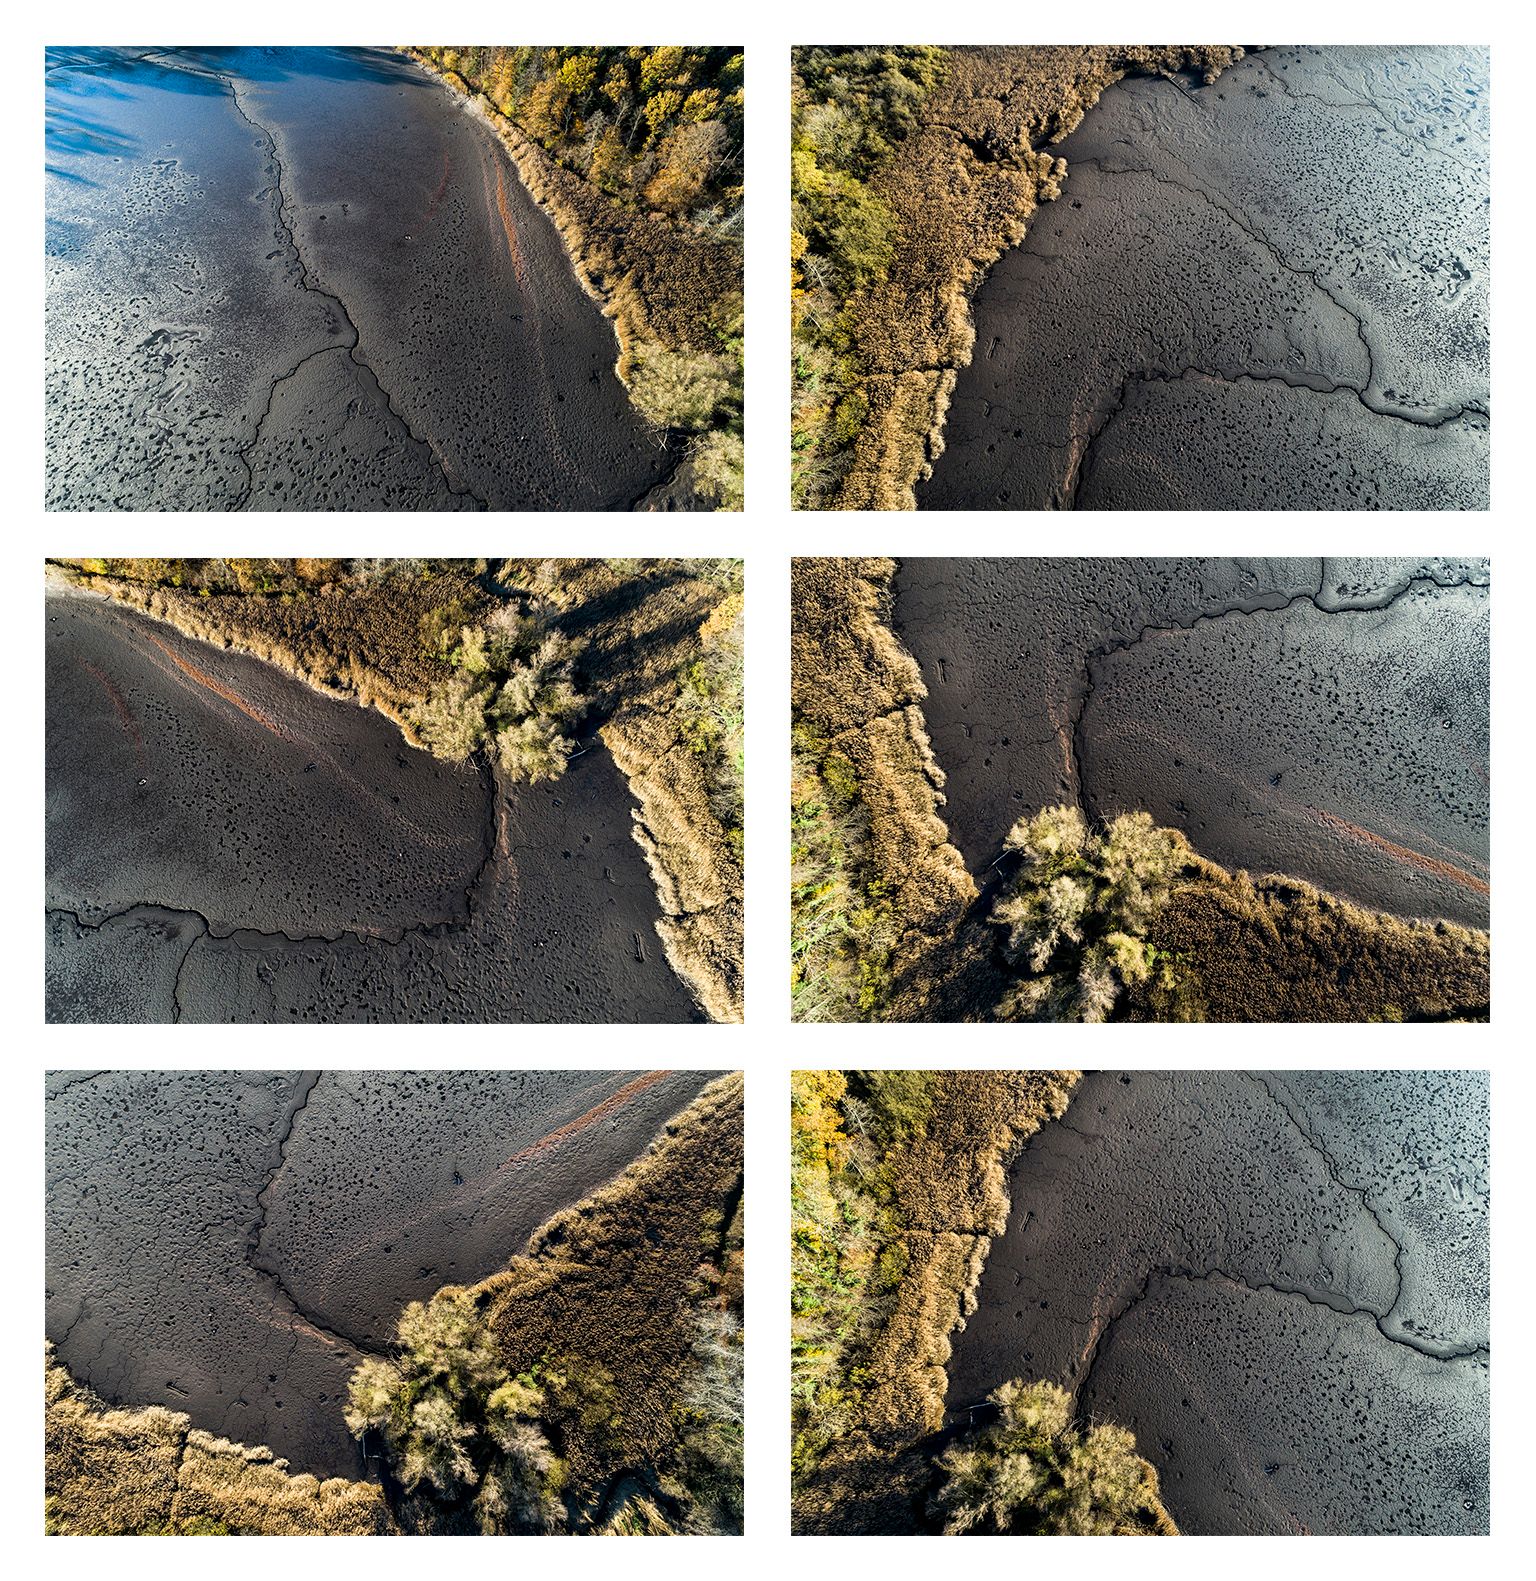 Stefan Kuhn's "Lakeshore Operations / Ground Level Serie #08" Drohnen Fotografie zeigt ein Seeufer mit 6 Motiven in einem Bild.